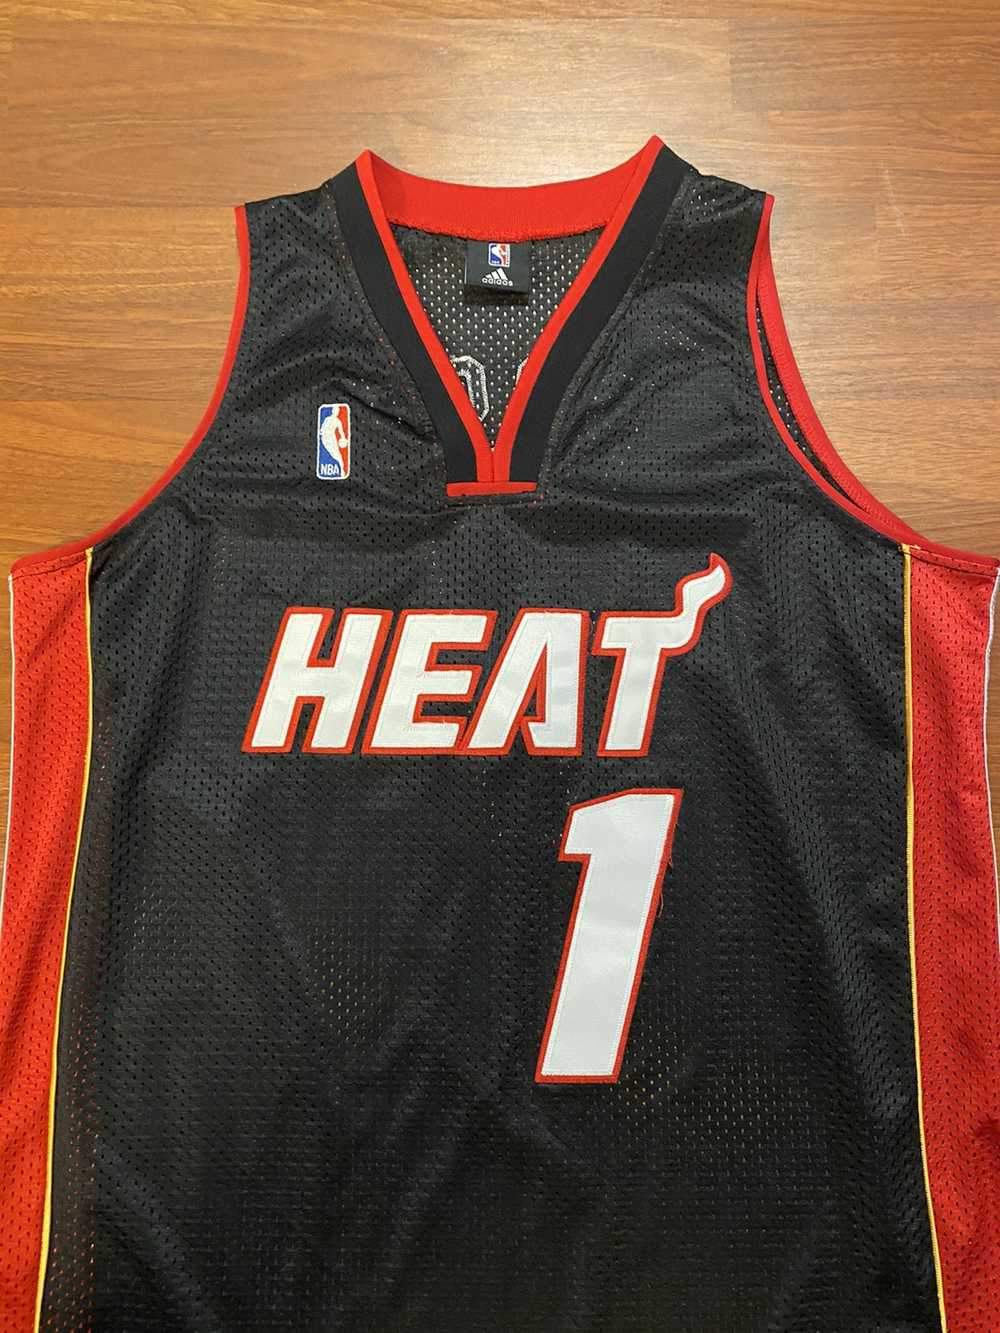 NBA Miami Heat Dwayne Wade 3 adidas Sewn Black Stitched Jersey